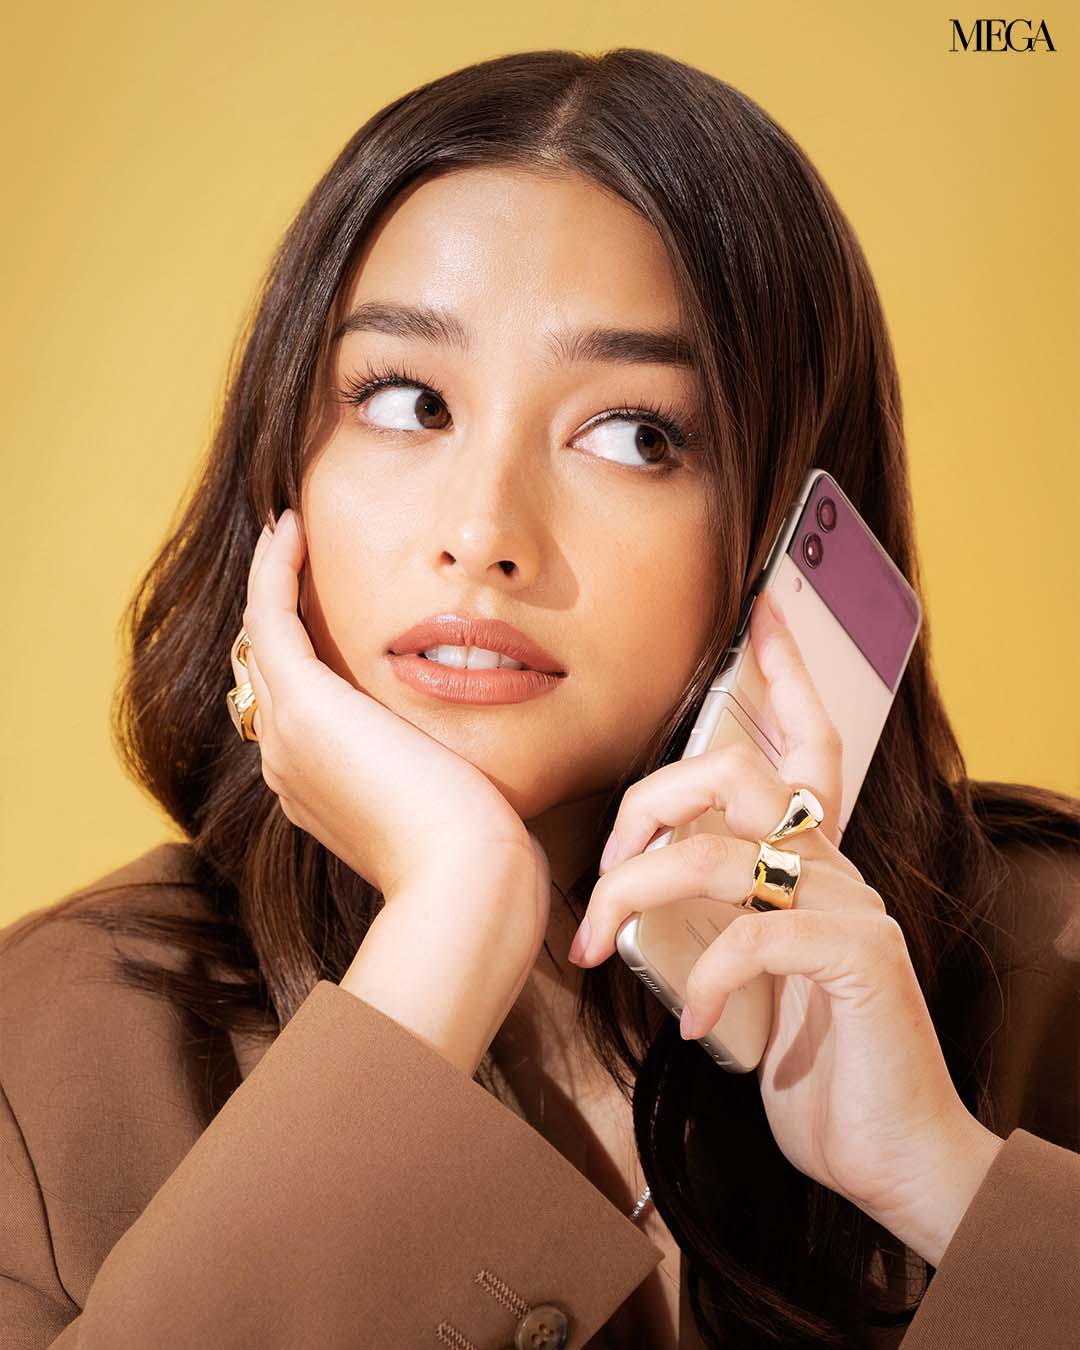 Hello? It's Liza Soberano calling!